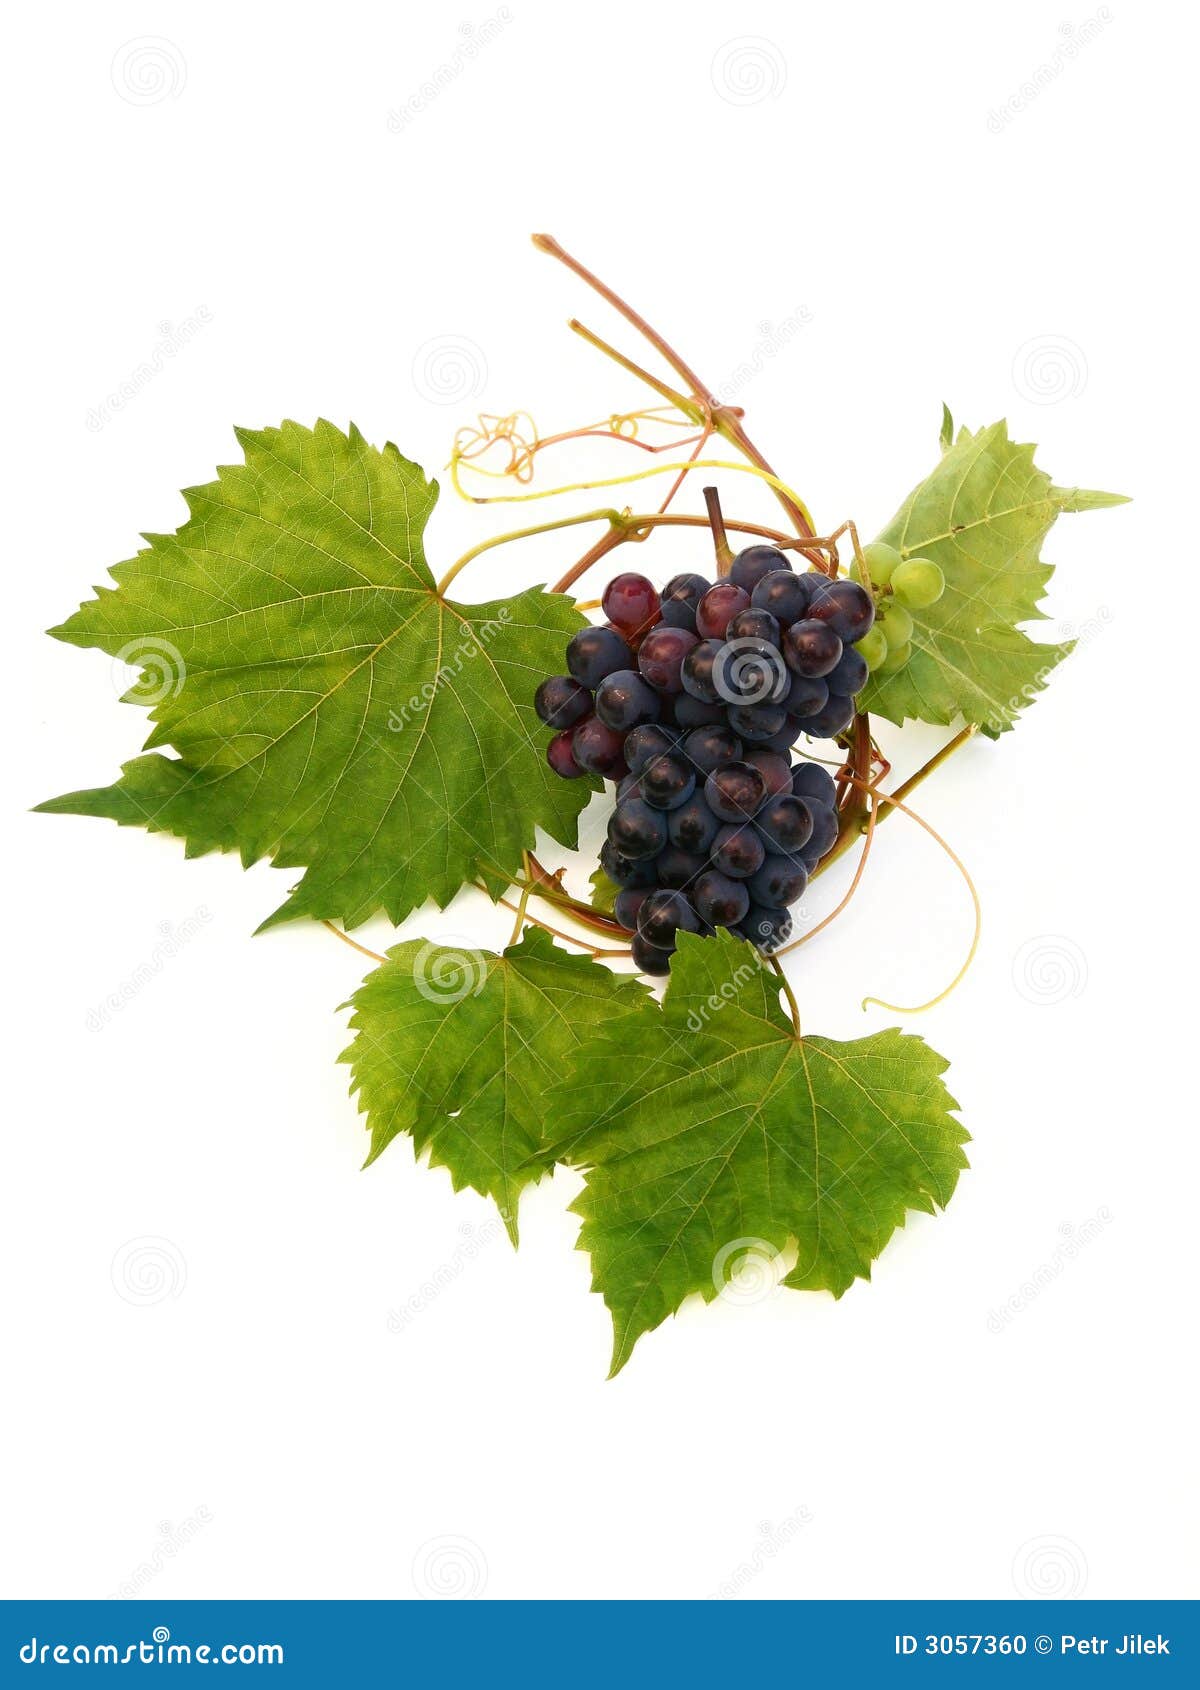 vine grape and vine leaf